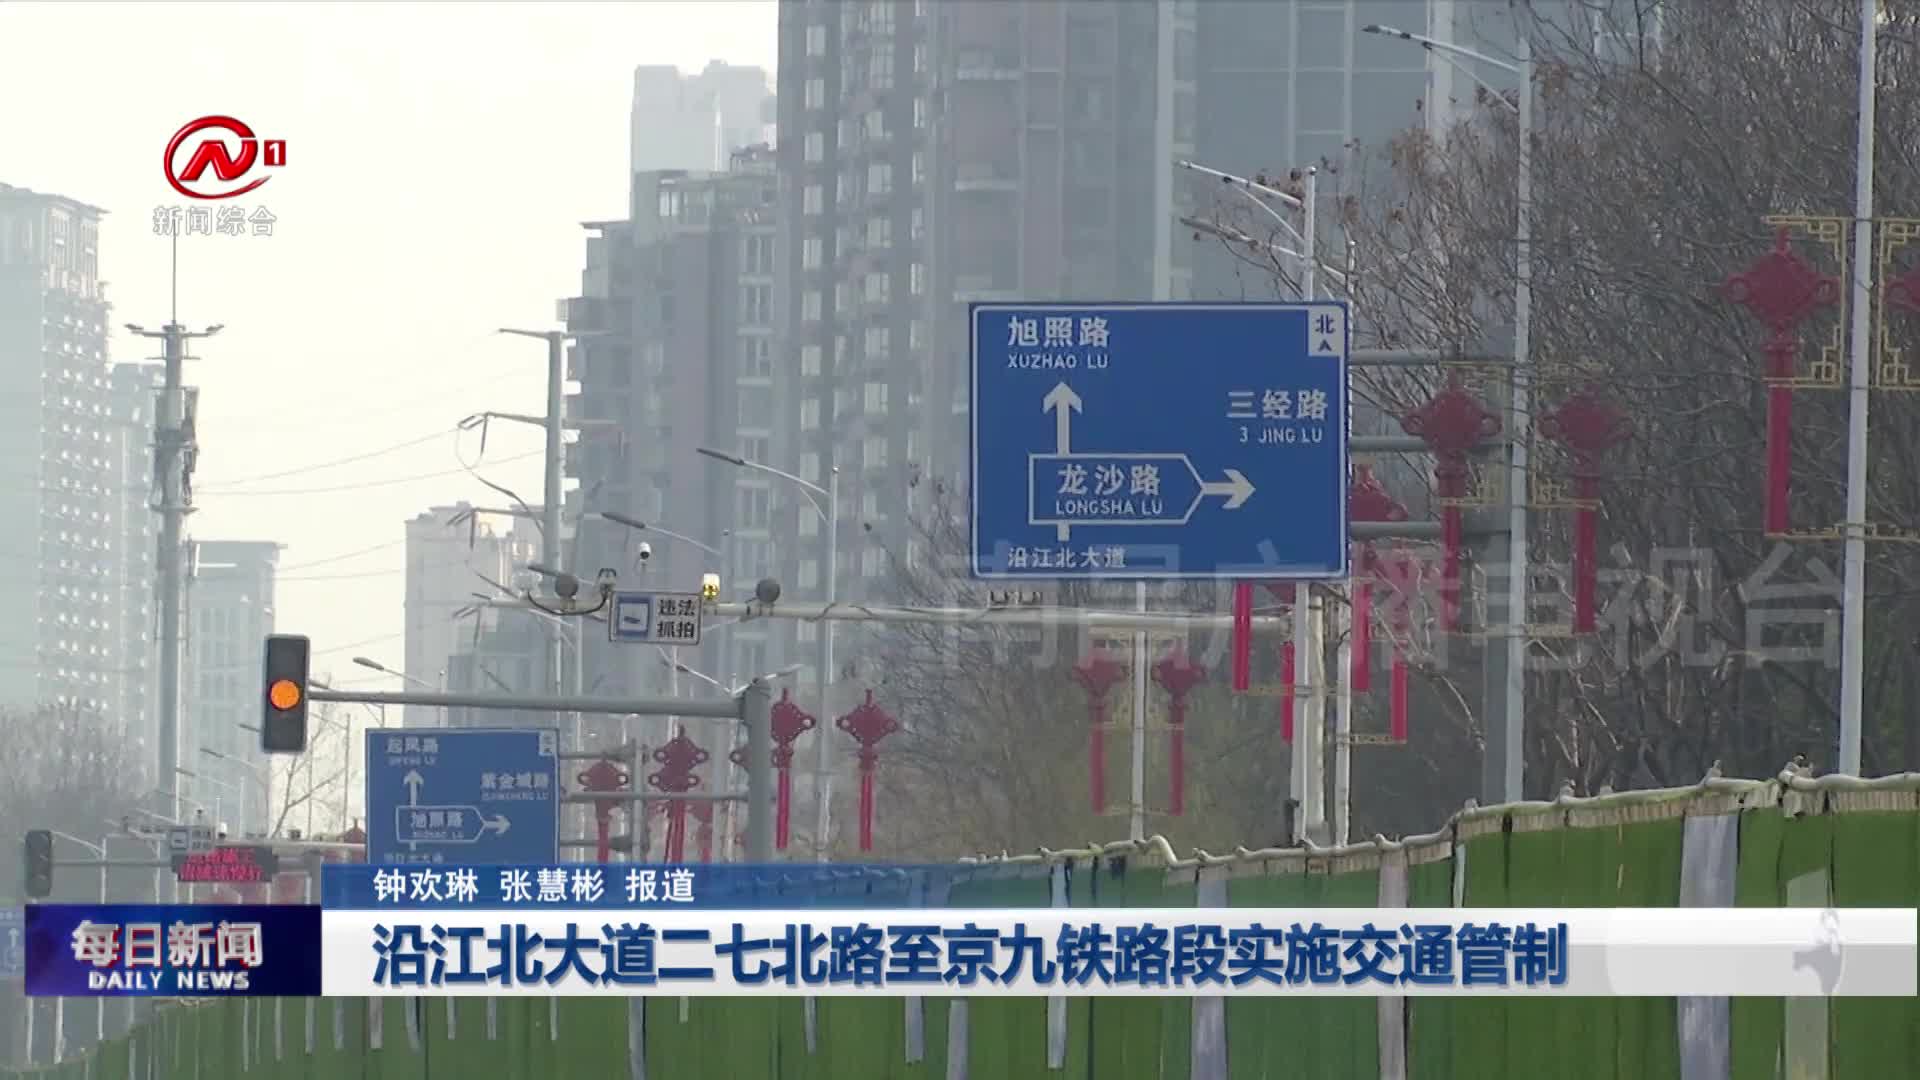 沿江北大道二七北路至京九铁路段实施交通管制